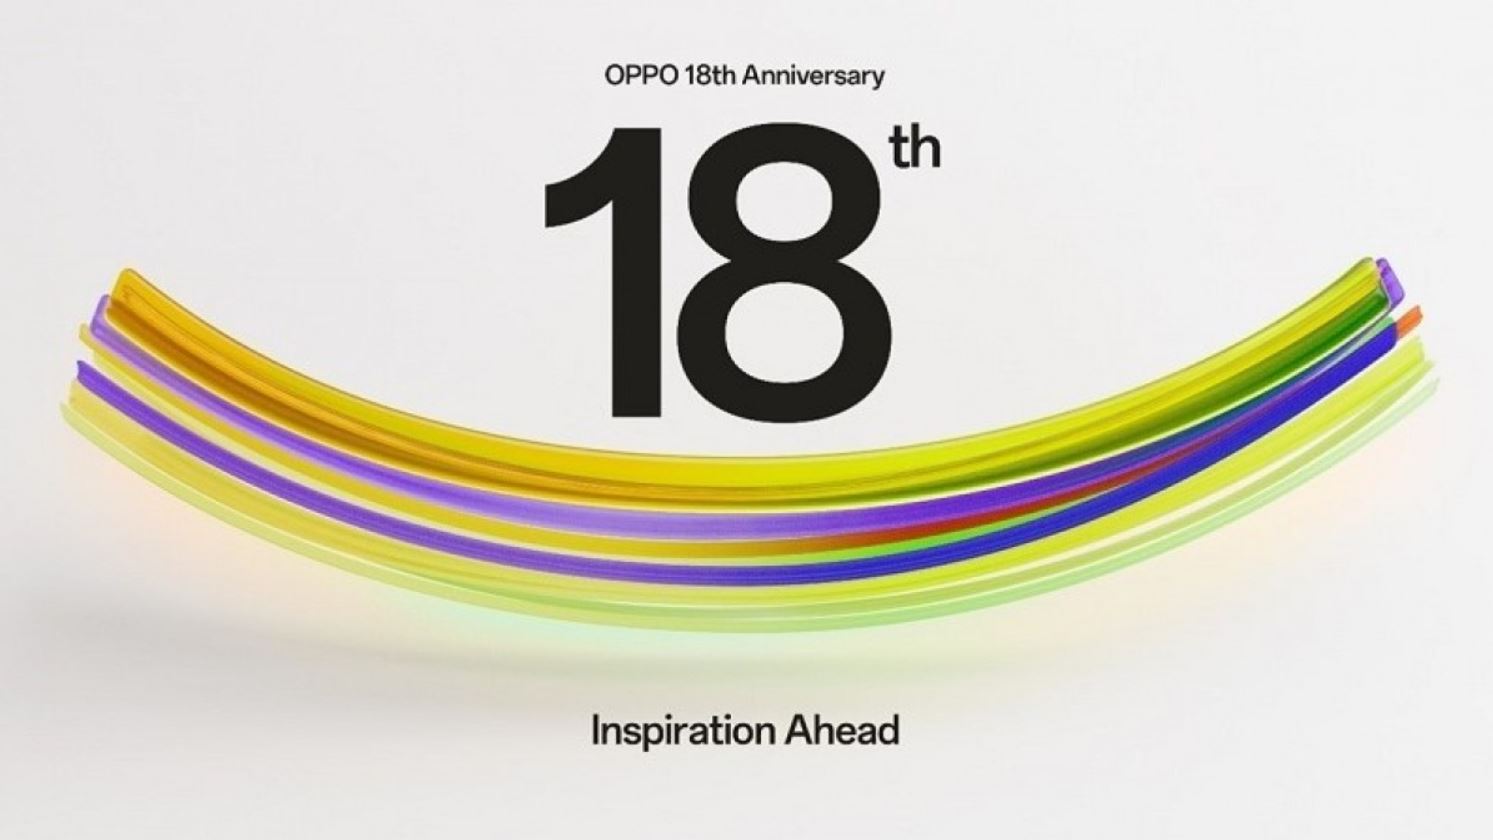 OPPO ฉลองครบรอบ 18 ปีด้วยการเปิดตัว ‘OPPO Global Community’ เพื่อการแชร์ข่าวสาร OPPO ระหว่างผู้ใช้!